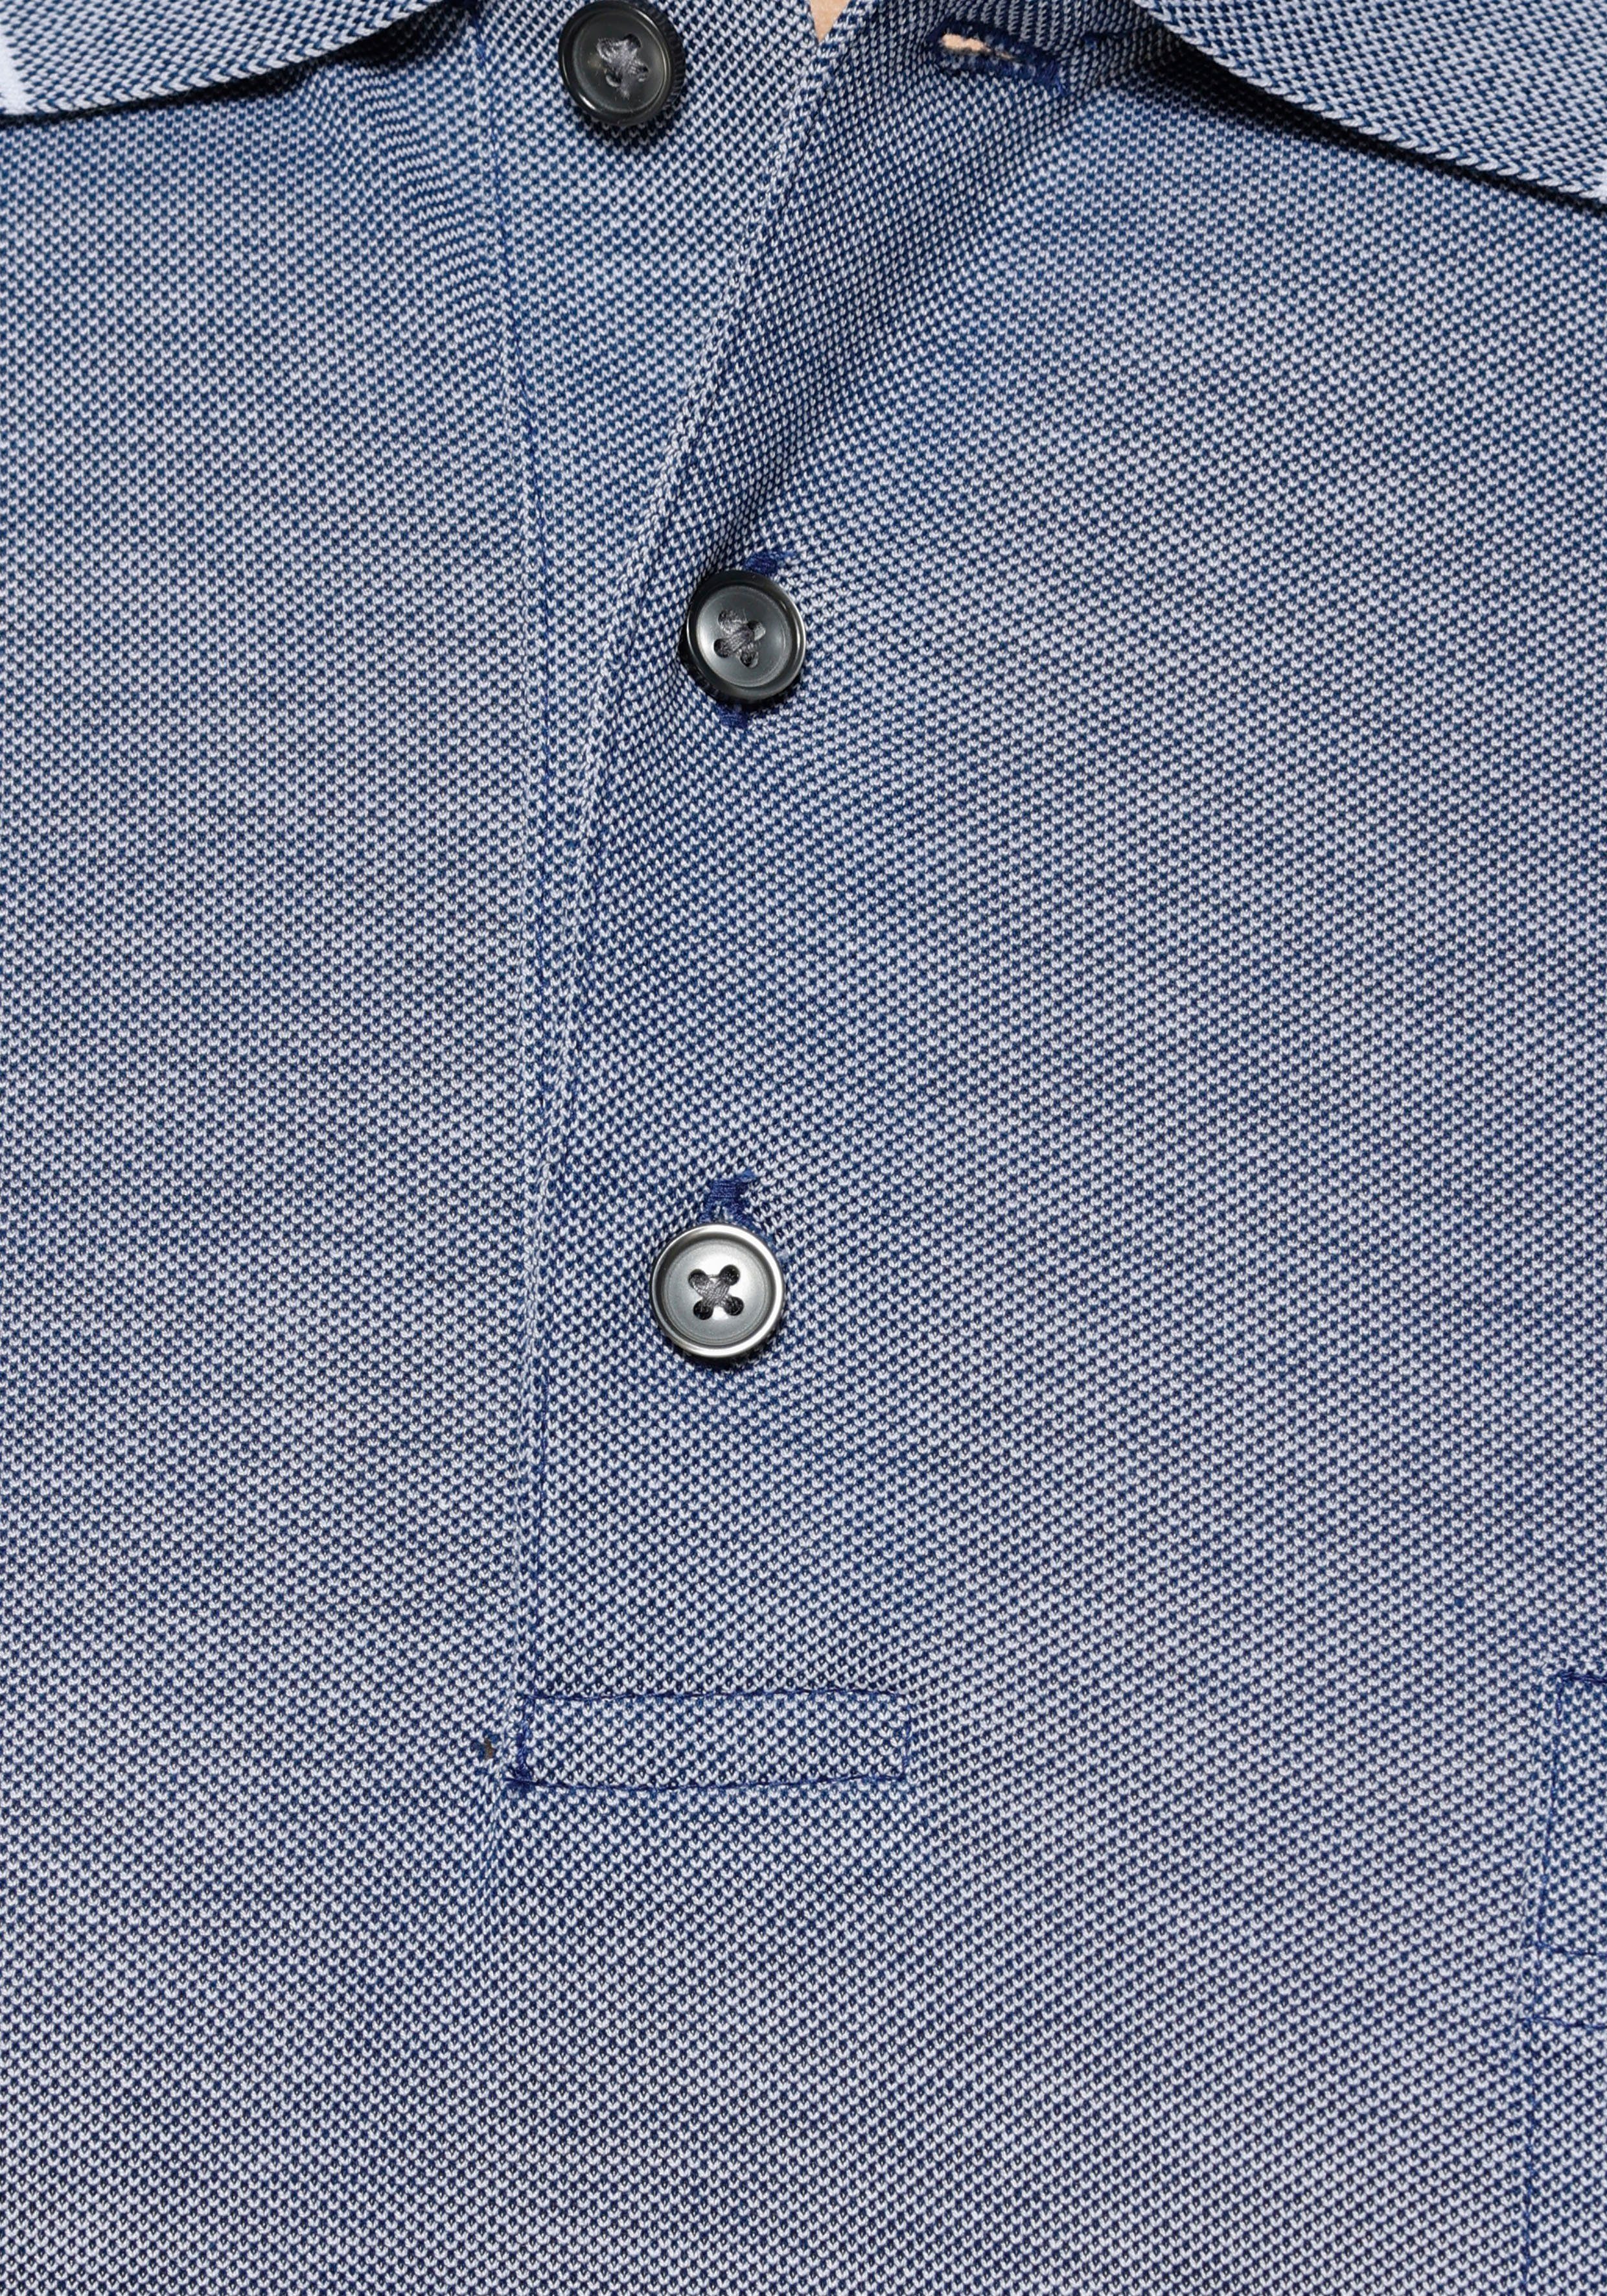 Piqué-Qualität in Luxor hochwertiger Poloshirt hellblau-meliert fit OLYMP modern